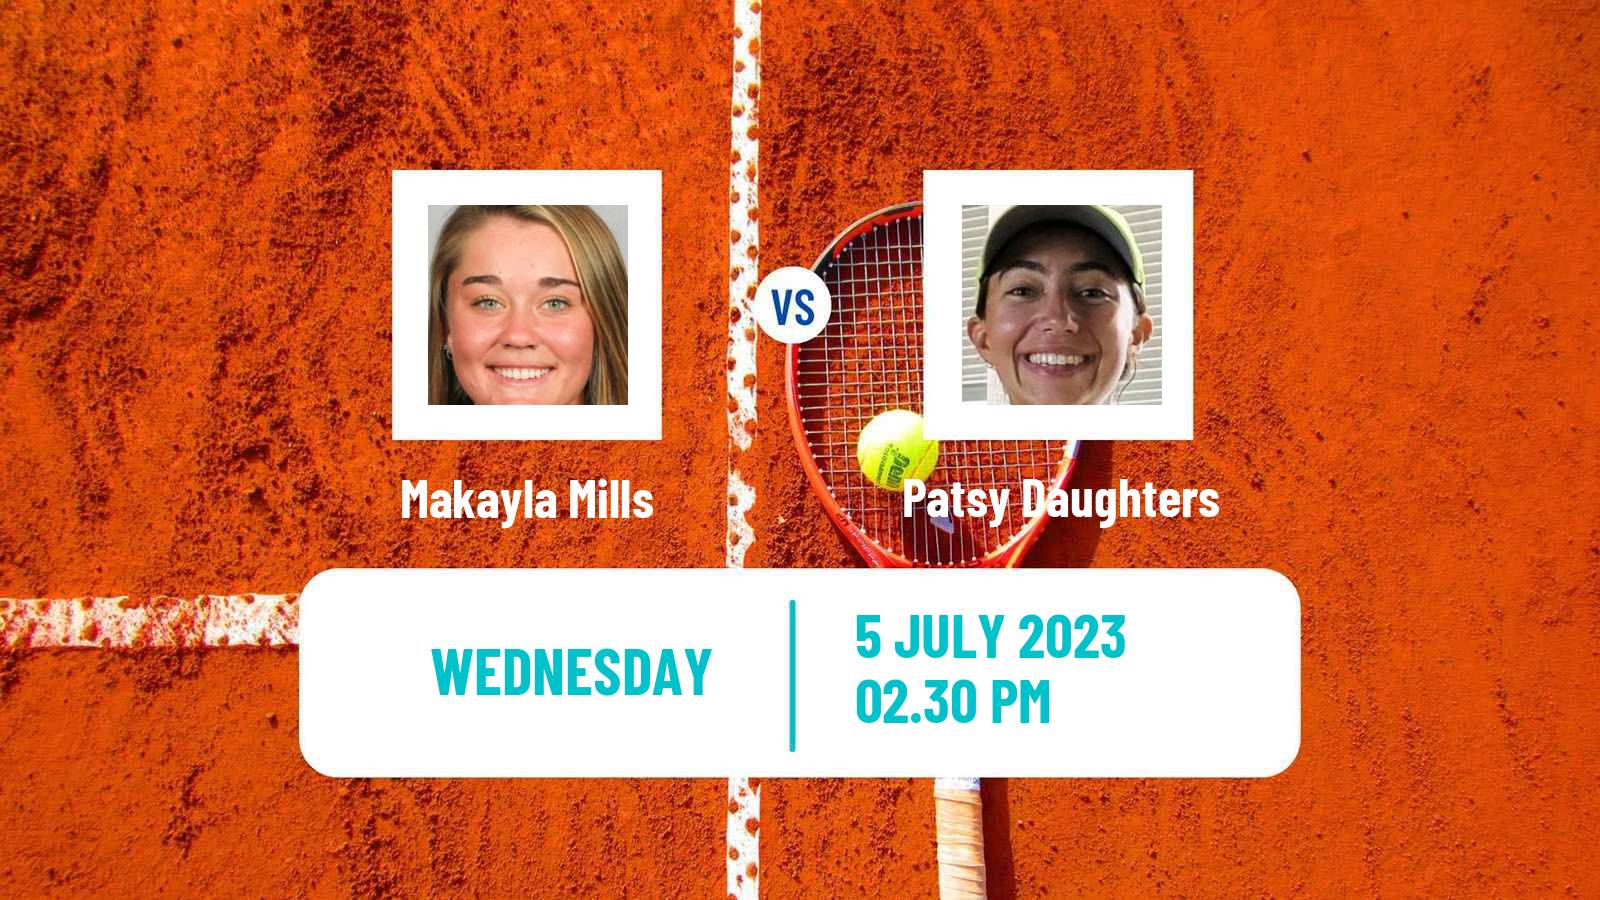 Tennis ITF W15 Lakewood Ca Women Makayla Mills - Patsy Daughters